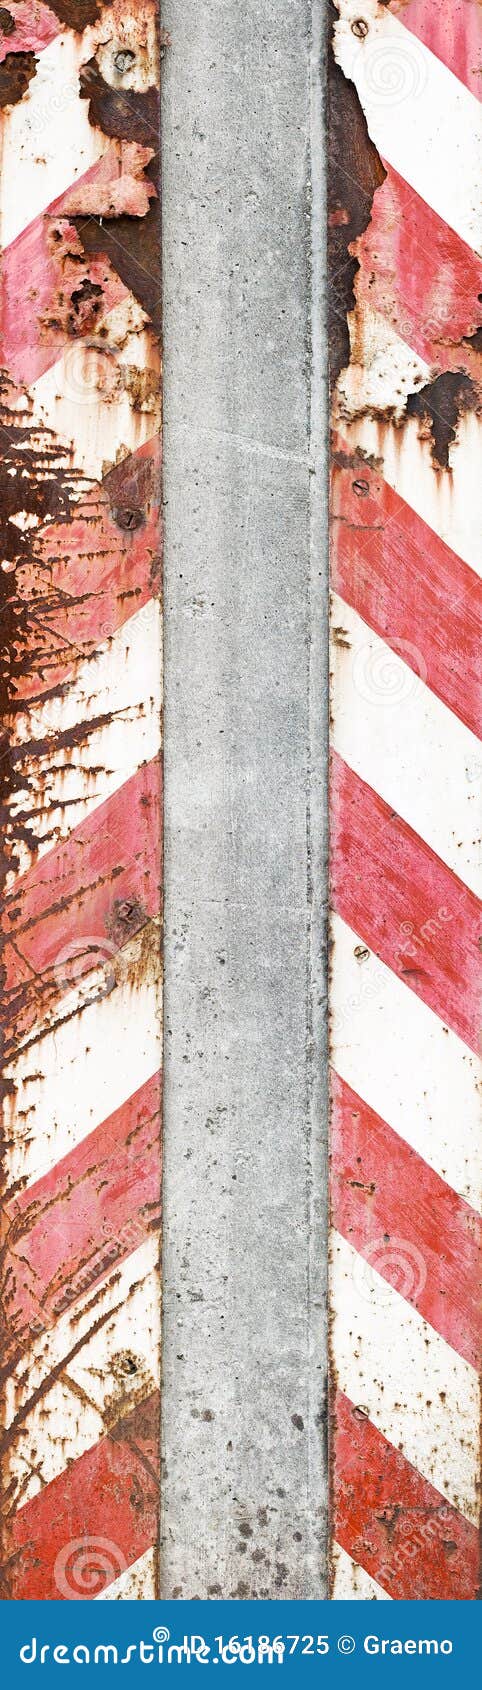 Concrete pijler met waarschuwingsstrepen. Textuur van oude doorstane concrete pijler met roestige waarschuwingsstrepen